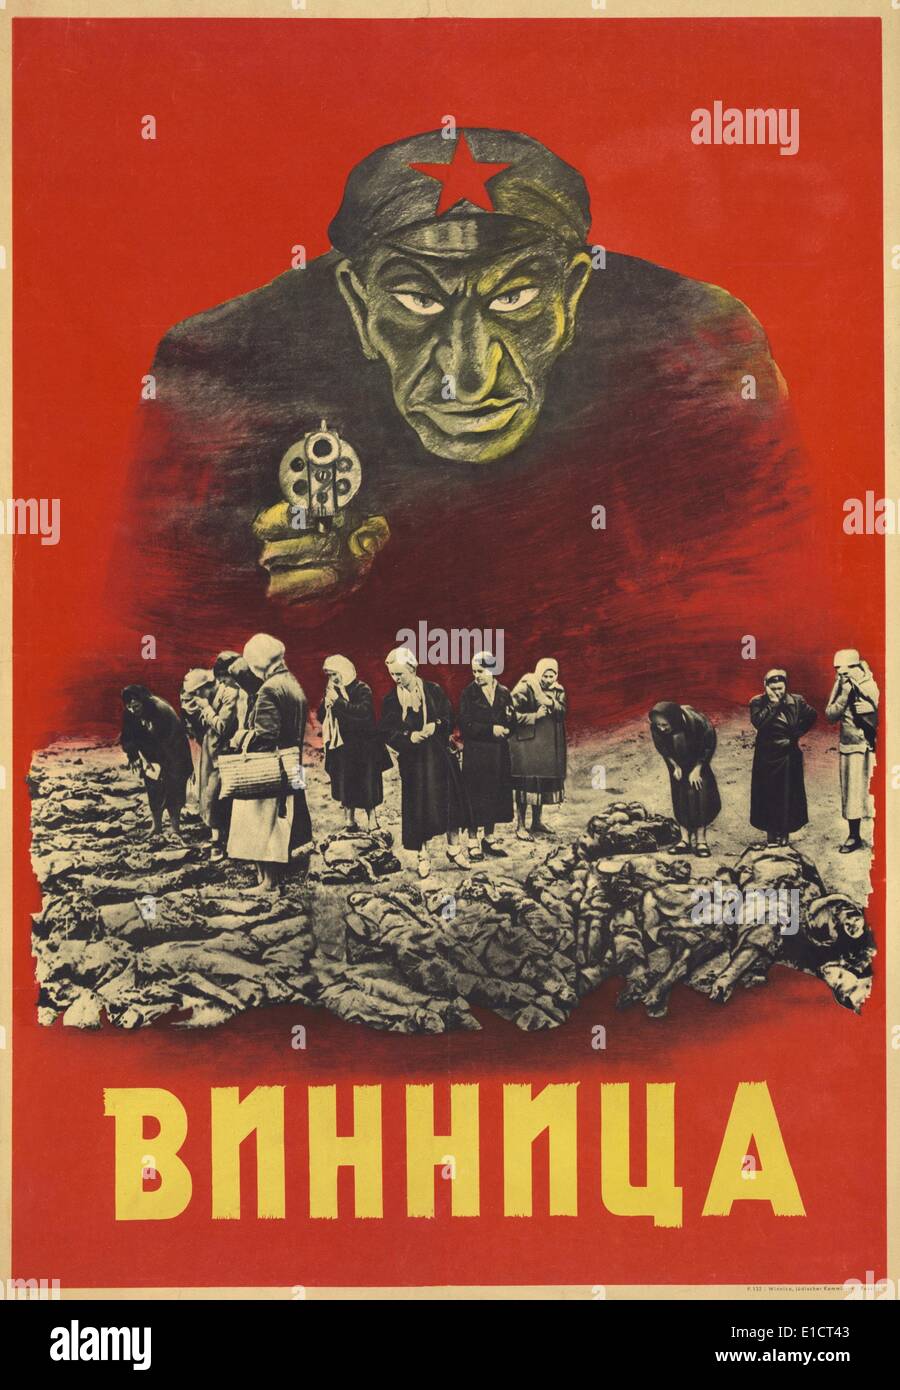 NS-antisemitischen Plakat von den frühen 1940er Jahren, als Deutschland sowjetische Ukraine besetzten. Es zeigt ein Gesicht mit Stereotyp jüdischen Stockfoto